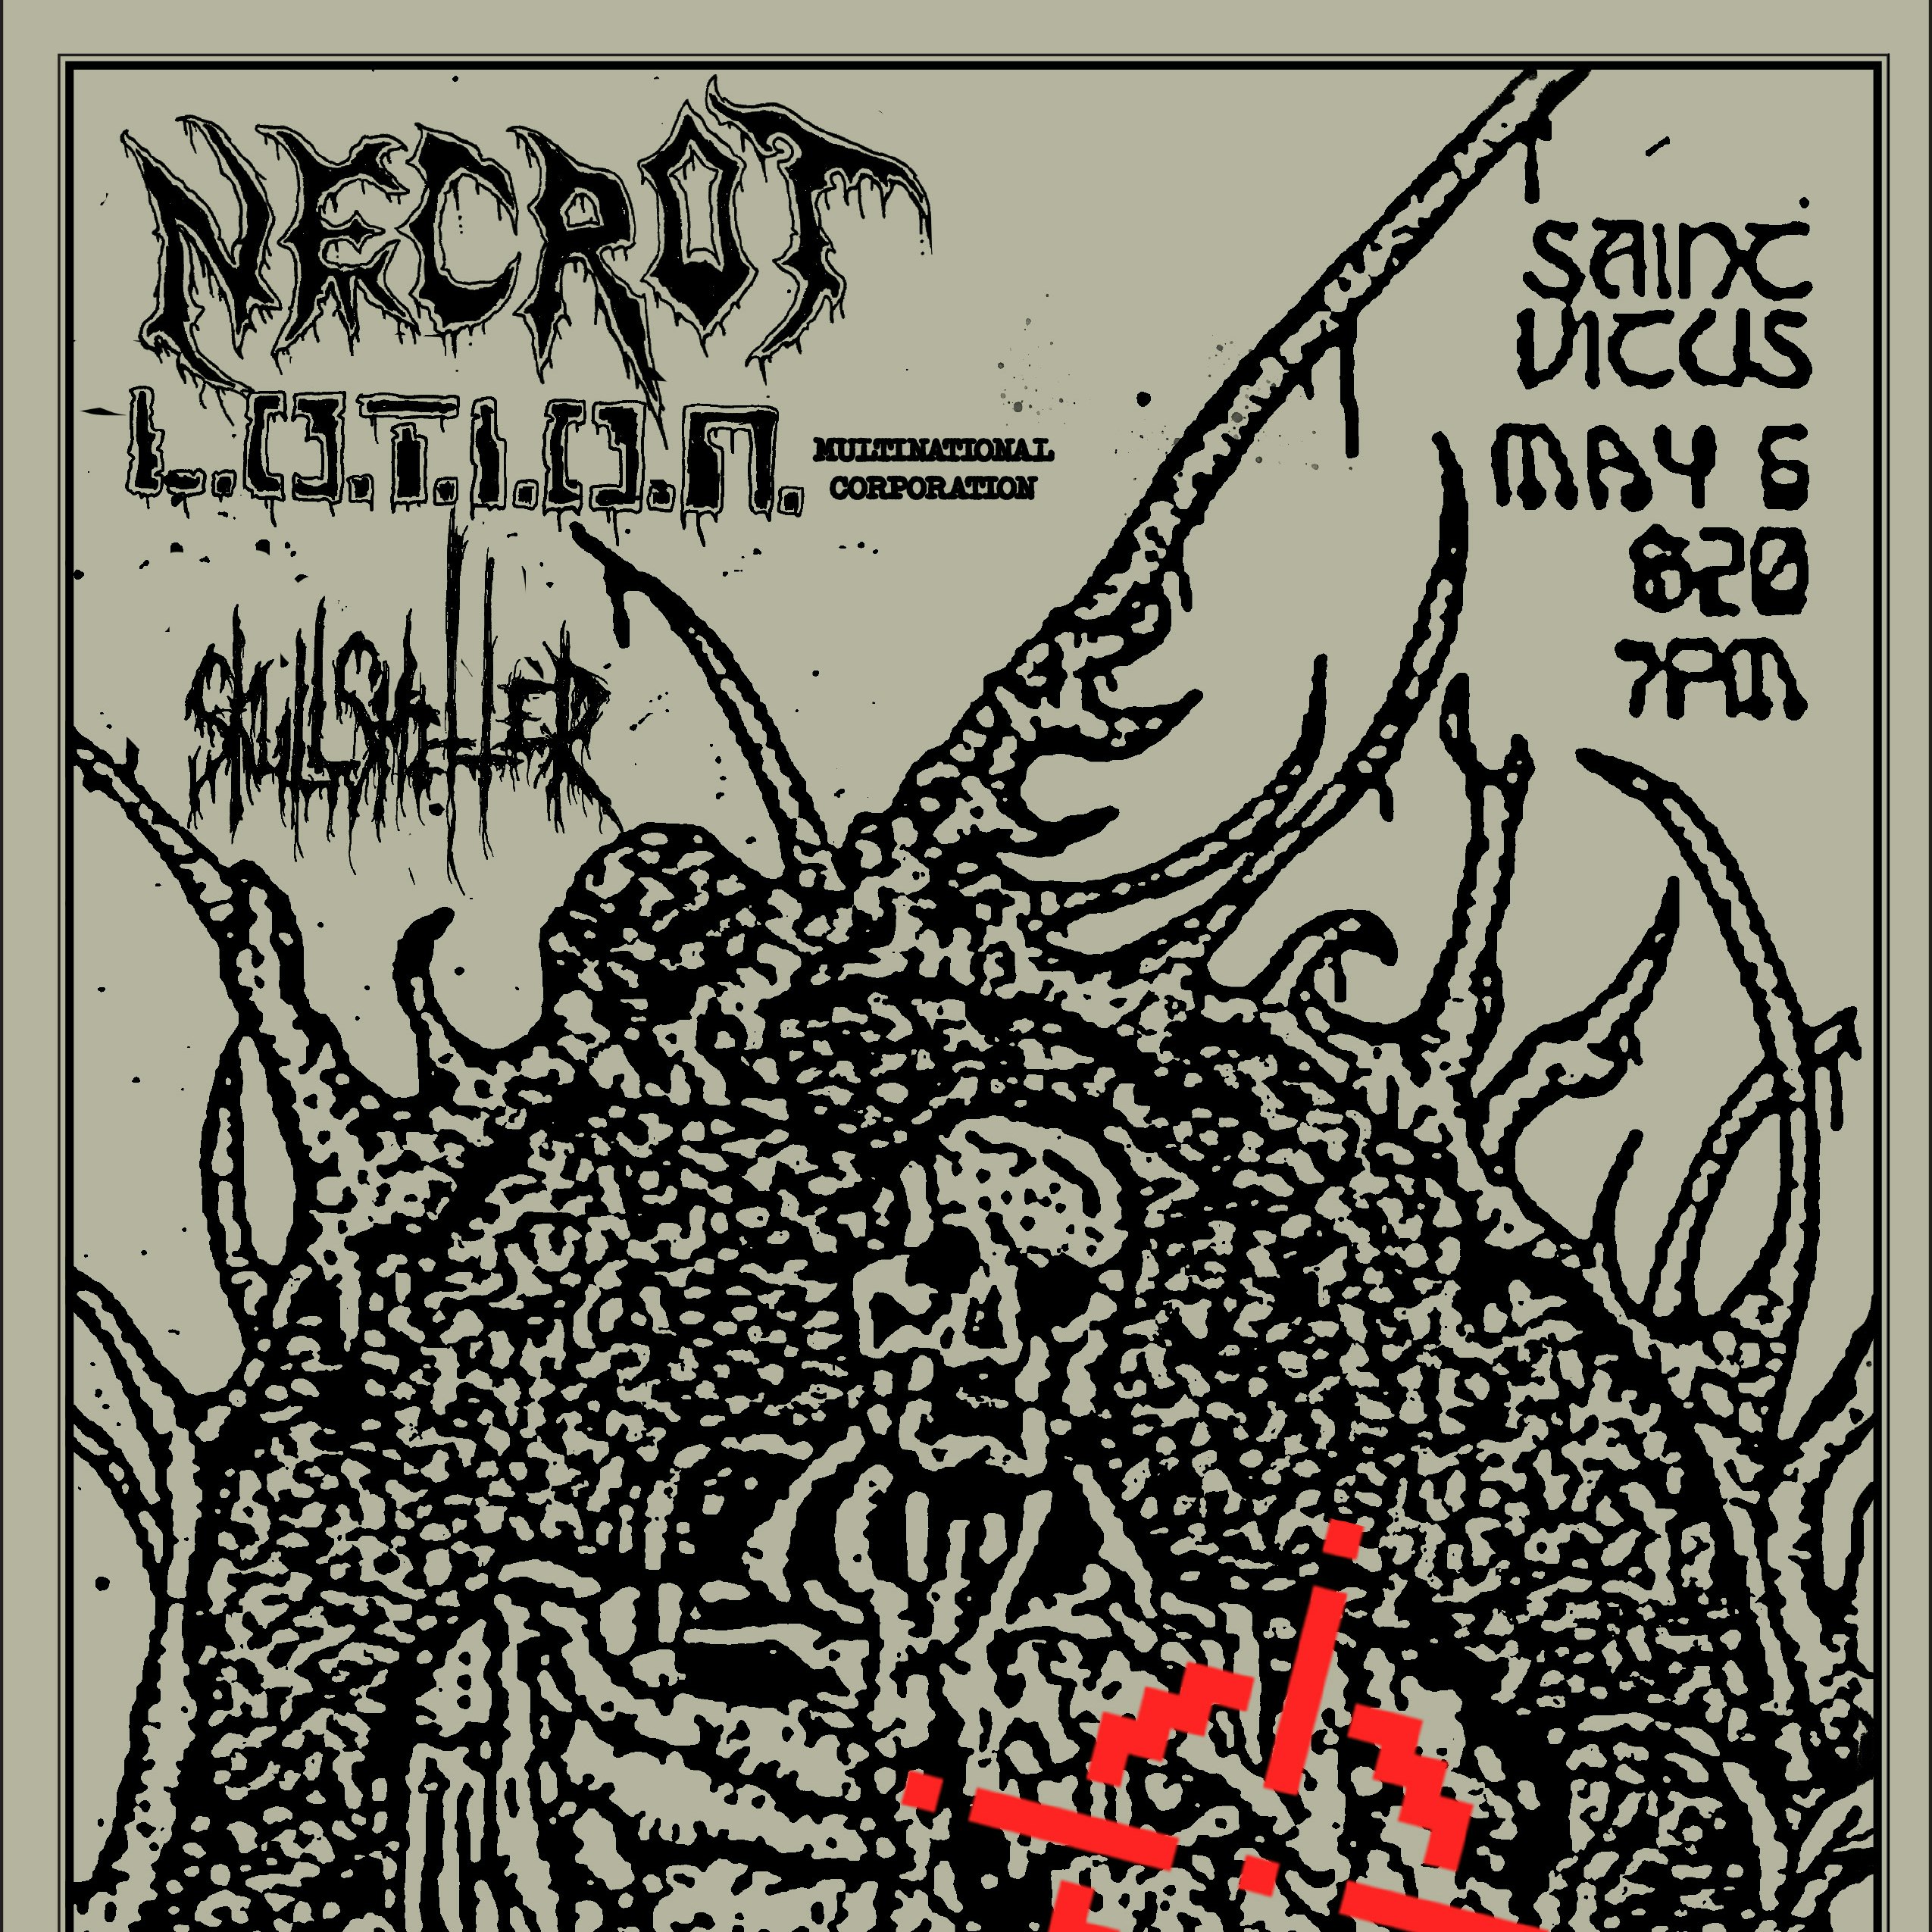 Necrot, L.O.T.I.O.N, Skullshitter